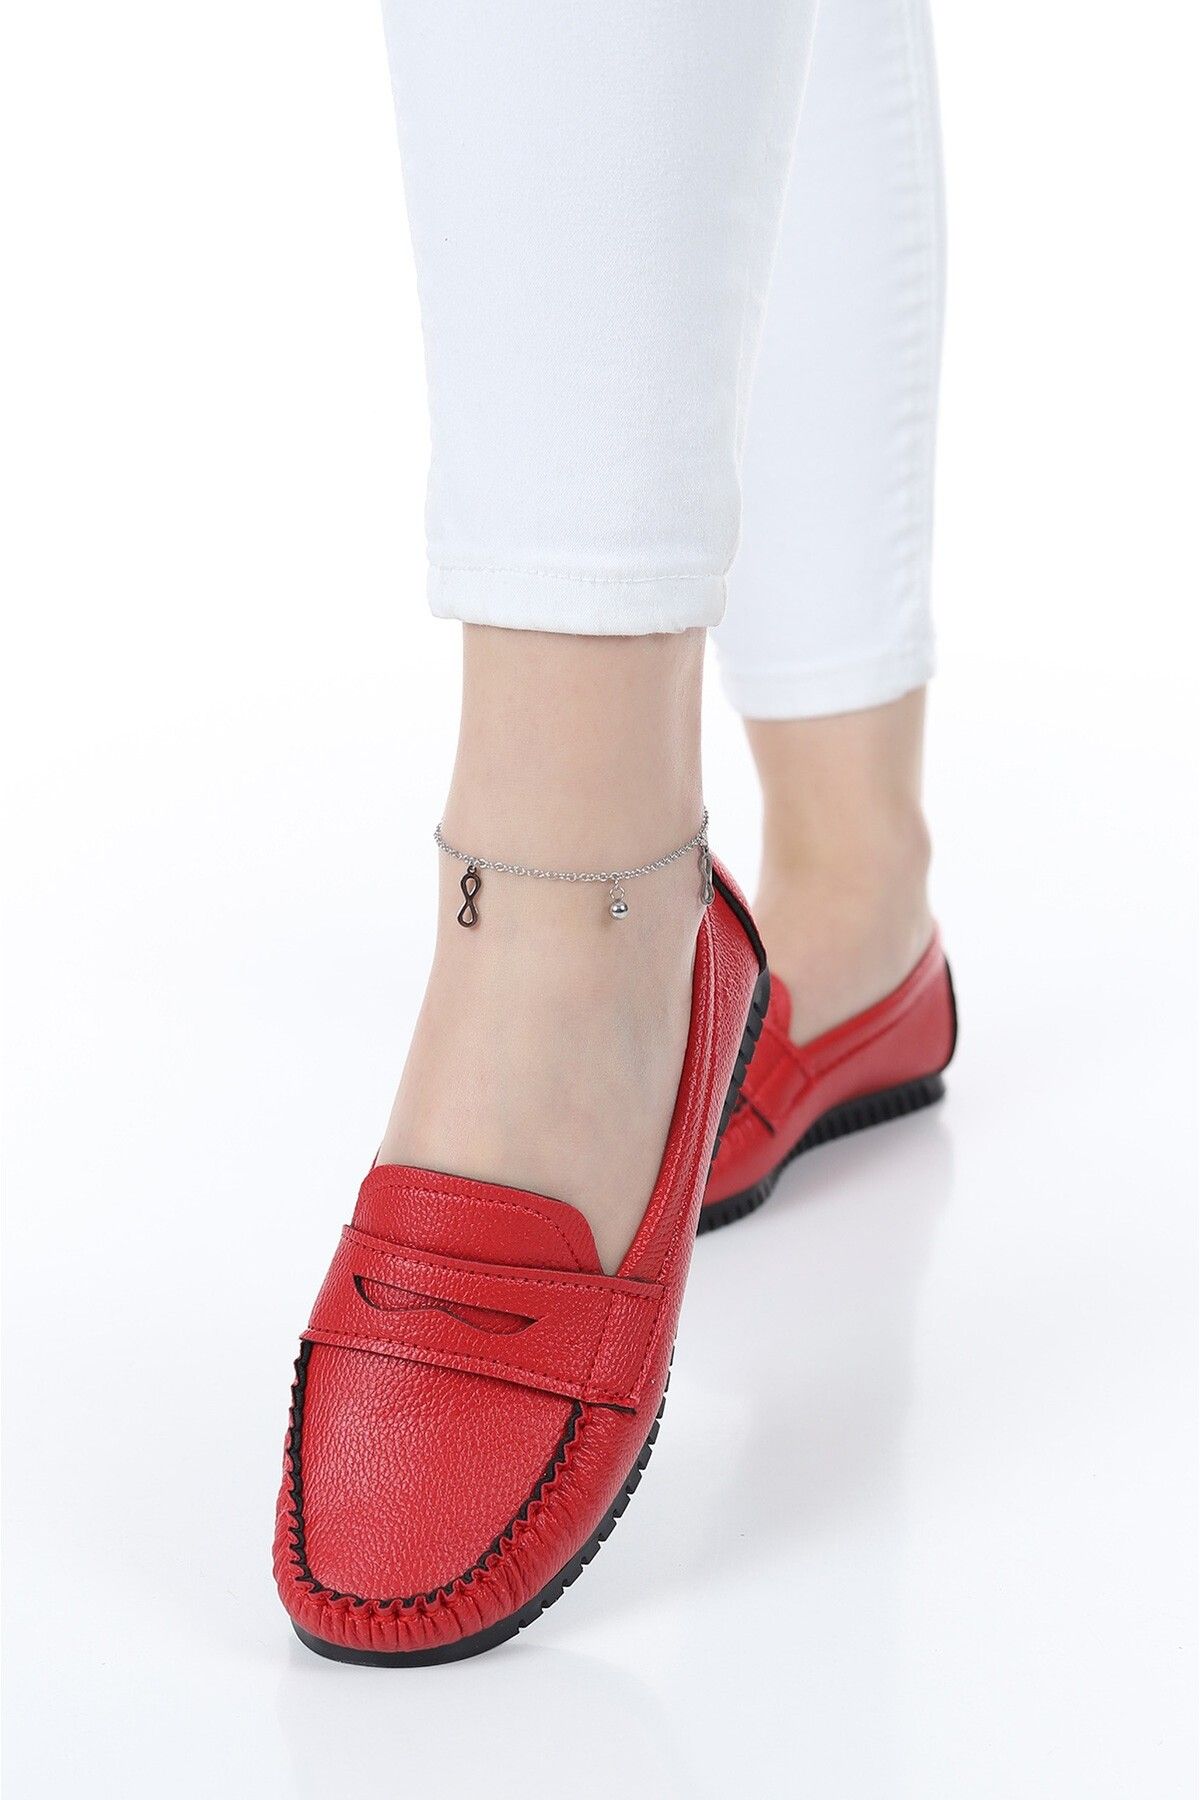 Lurji Kadın Günlük Giyilebilir Deri Cilt Dışarı Babet Yumuşak Taban Ofis Mevsimlik Ayakkabı Klasik